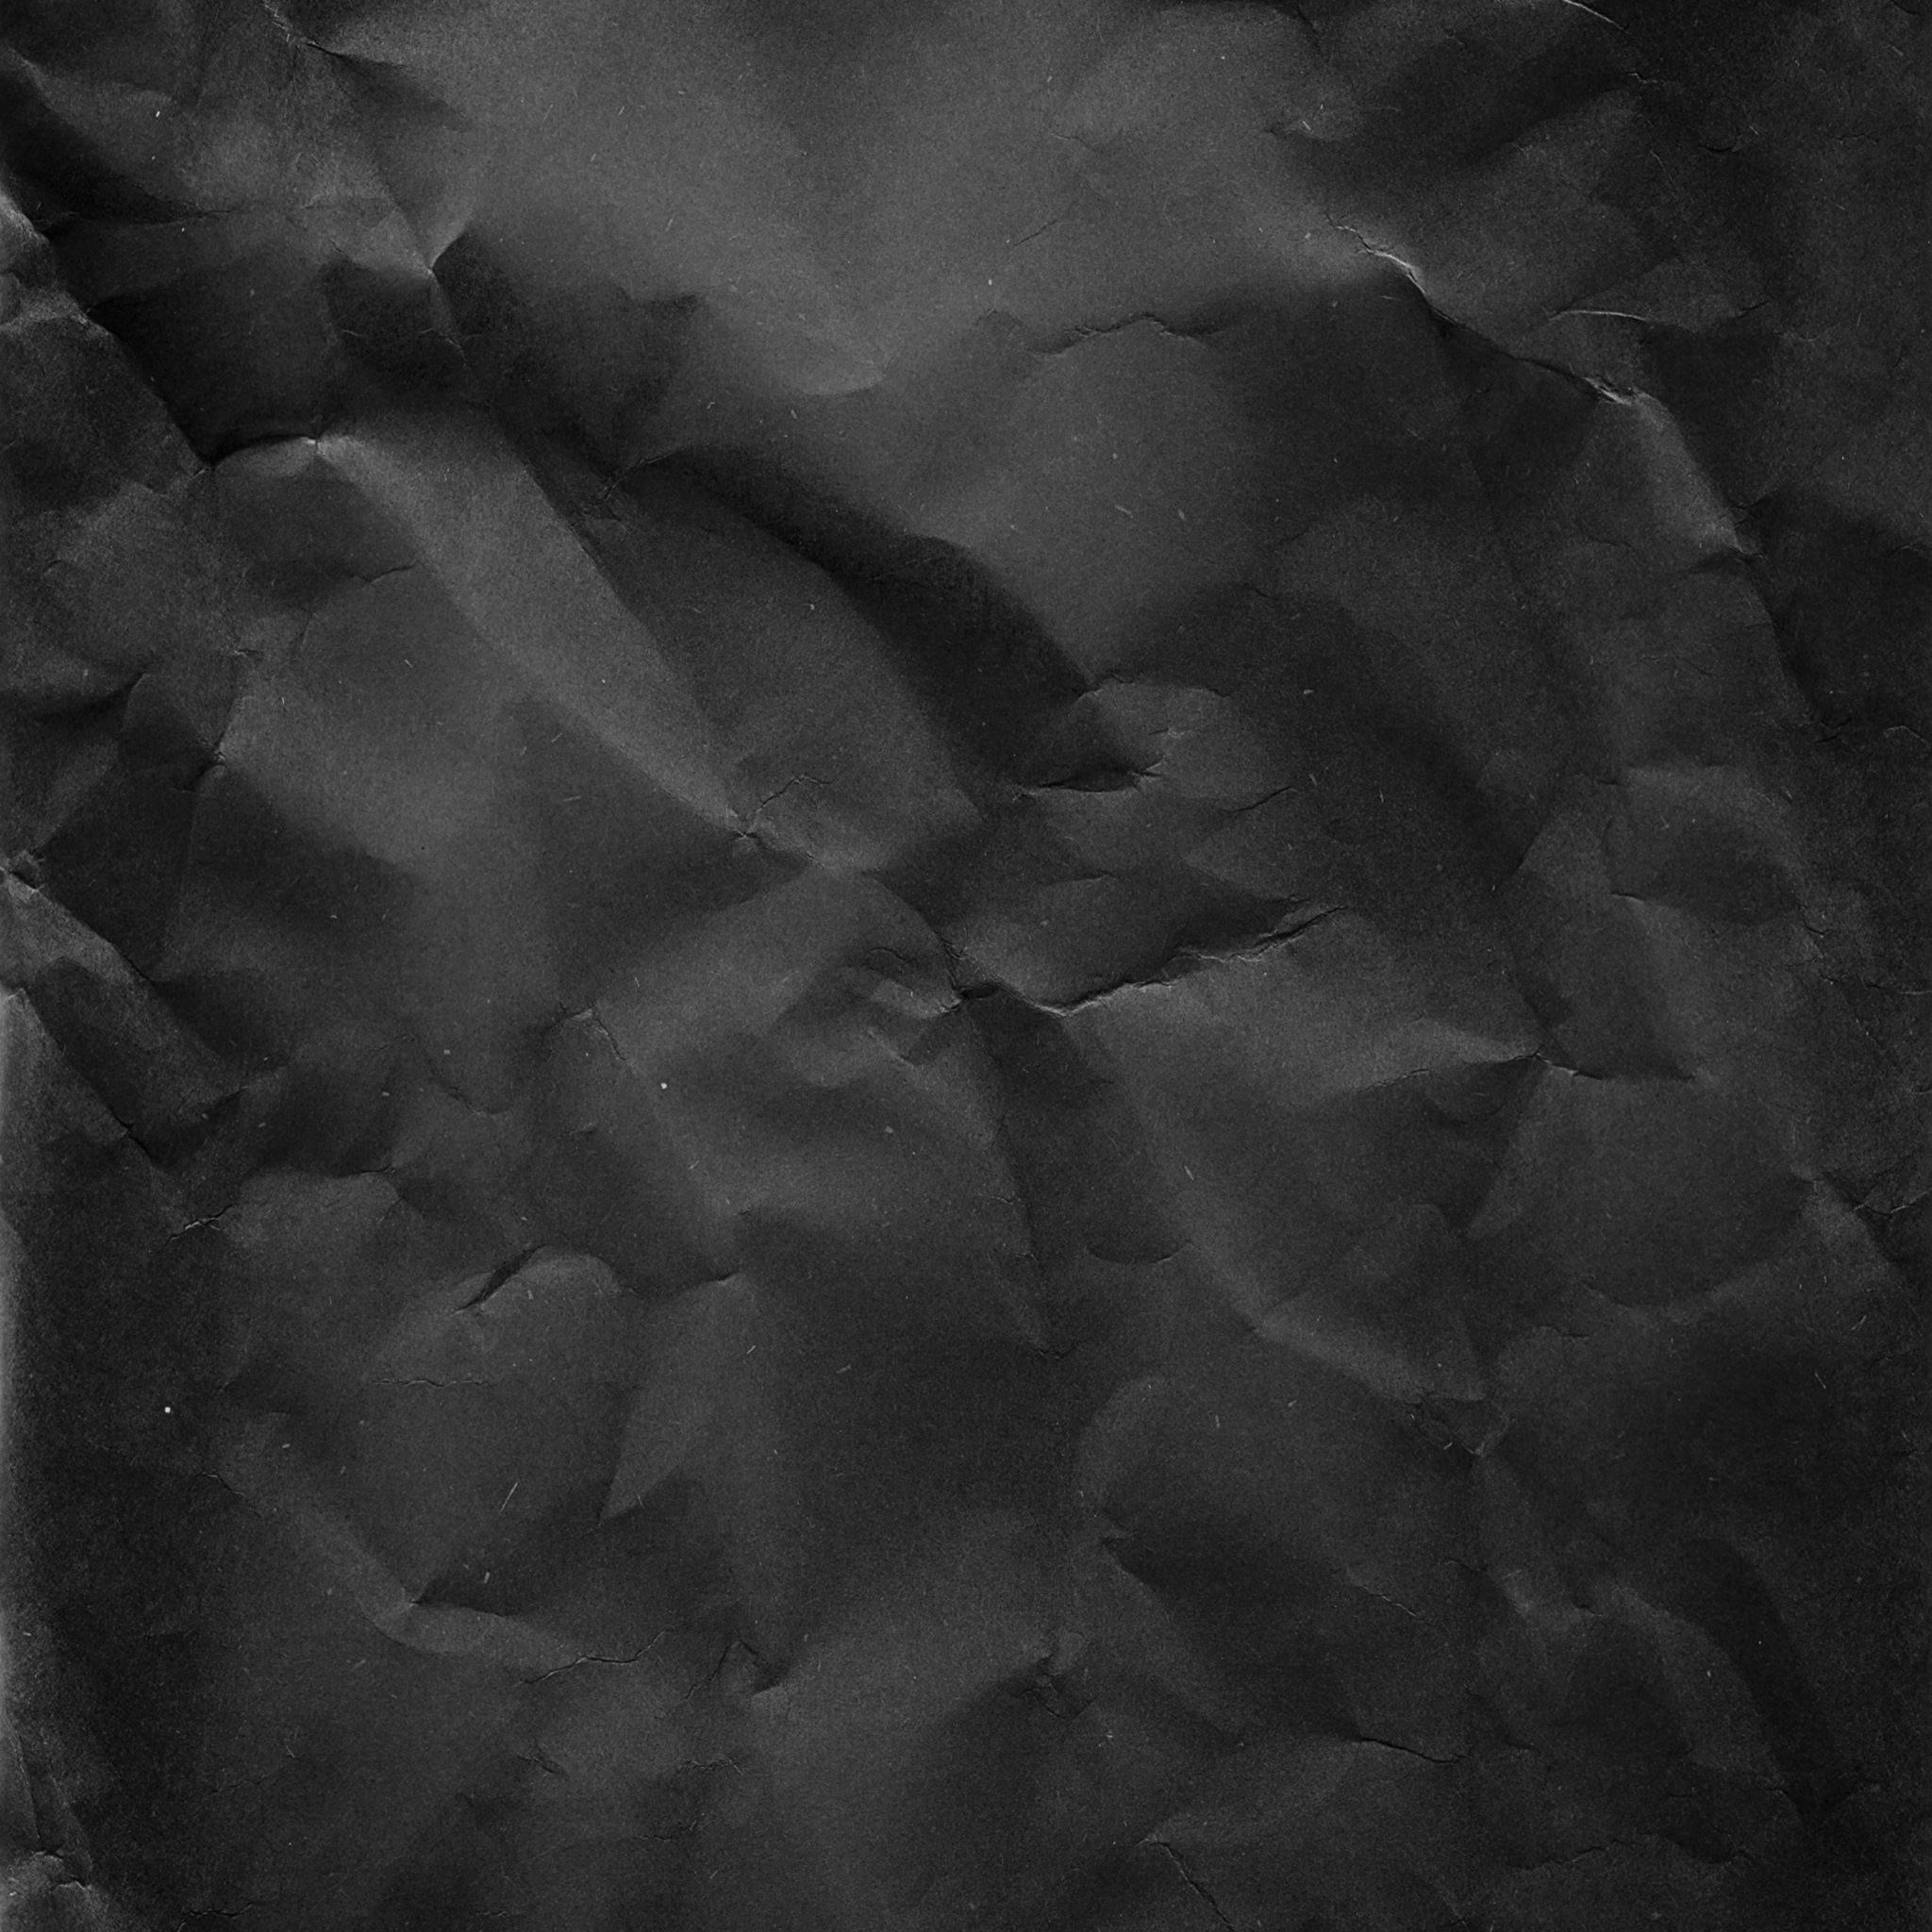 schwarze papiertapete,schwarz,weiß,schwarz und weiß,monochrome fotografie,einfarbig